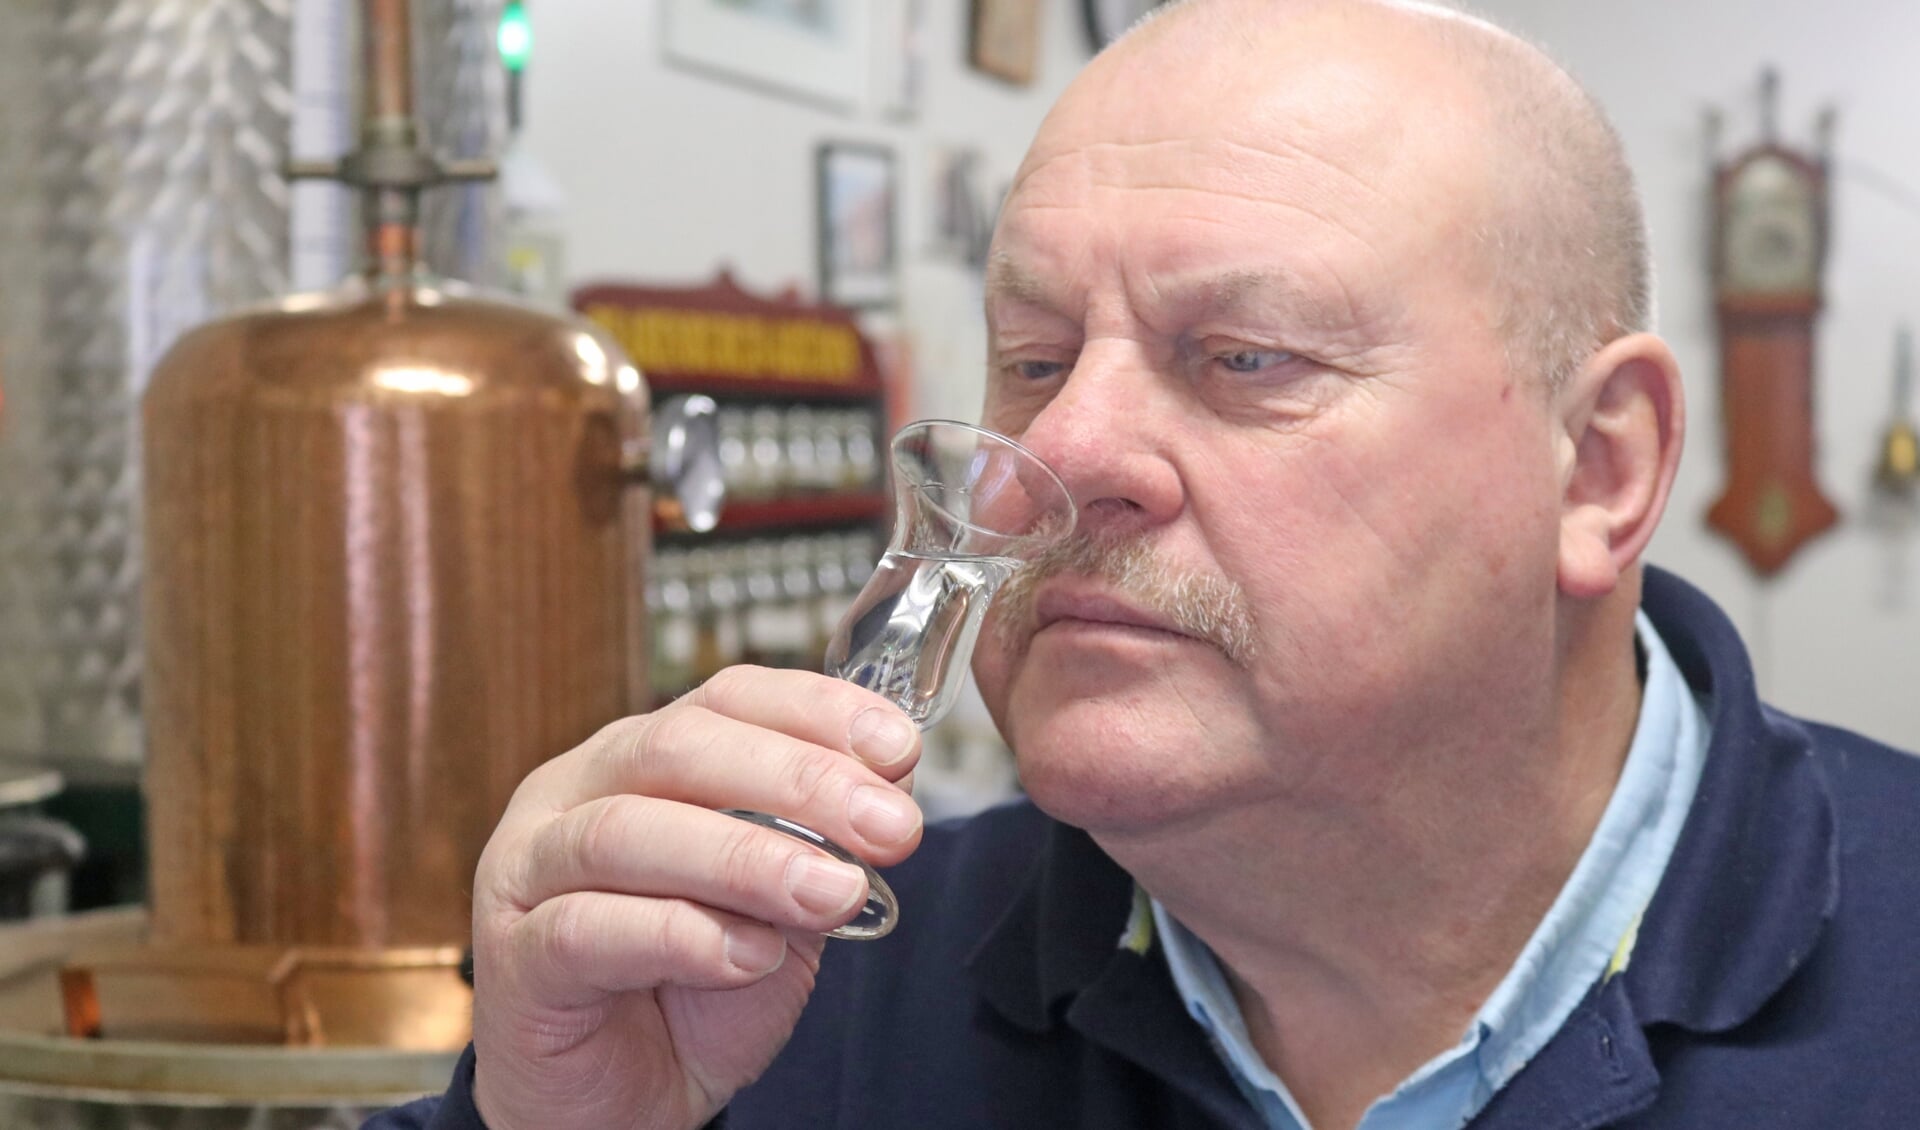  “Ik ben de enige distilleerderij die nog echt ambachtelijk werkt,” vertelt Wiepie Oenema over zijn distilleerderij- toepasselijk De Stiekeme Stoker geheten.  